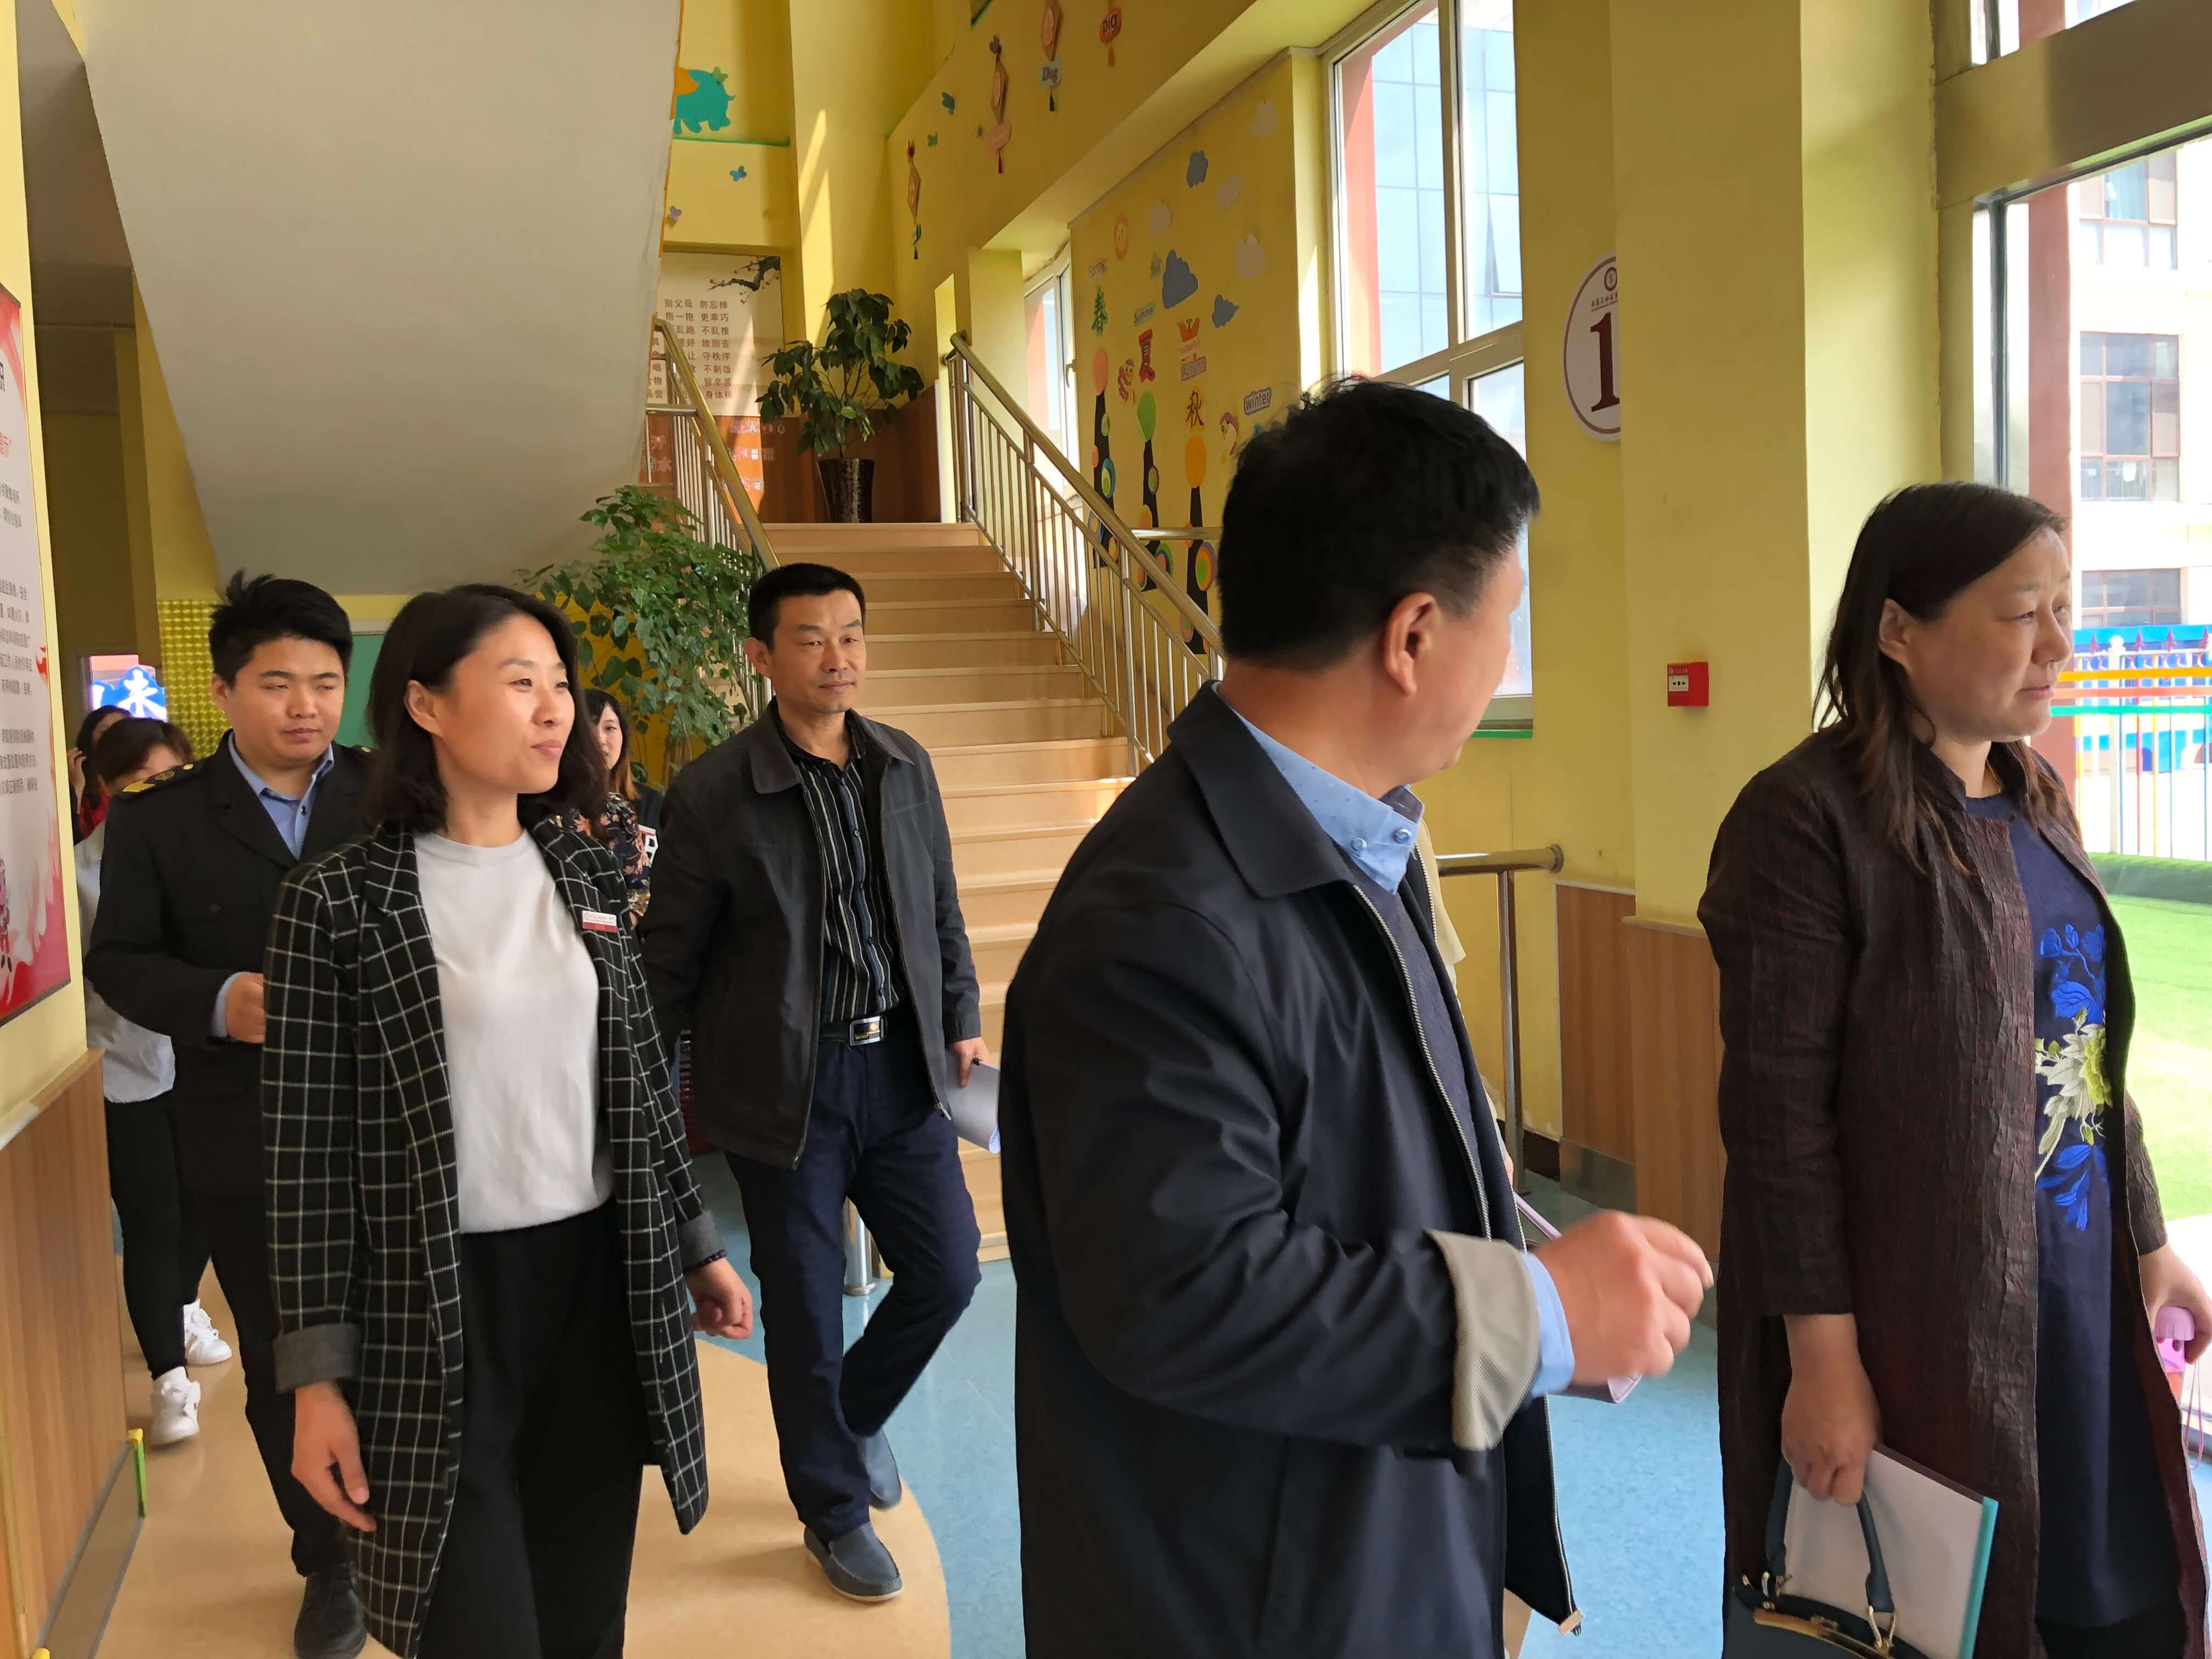 石家庄私立第一中学幼儿园2017年度工作检查